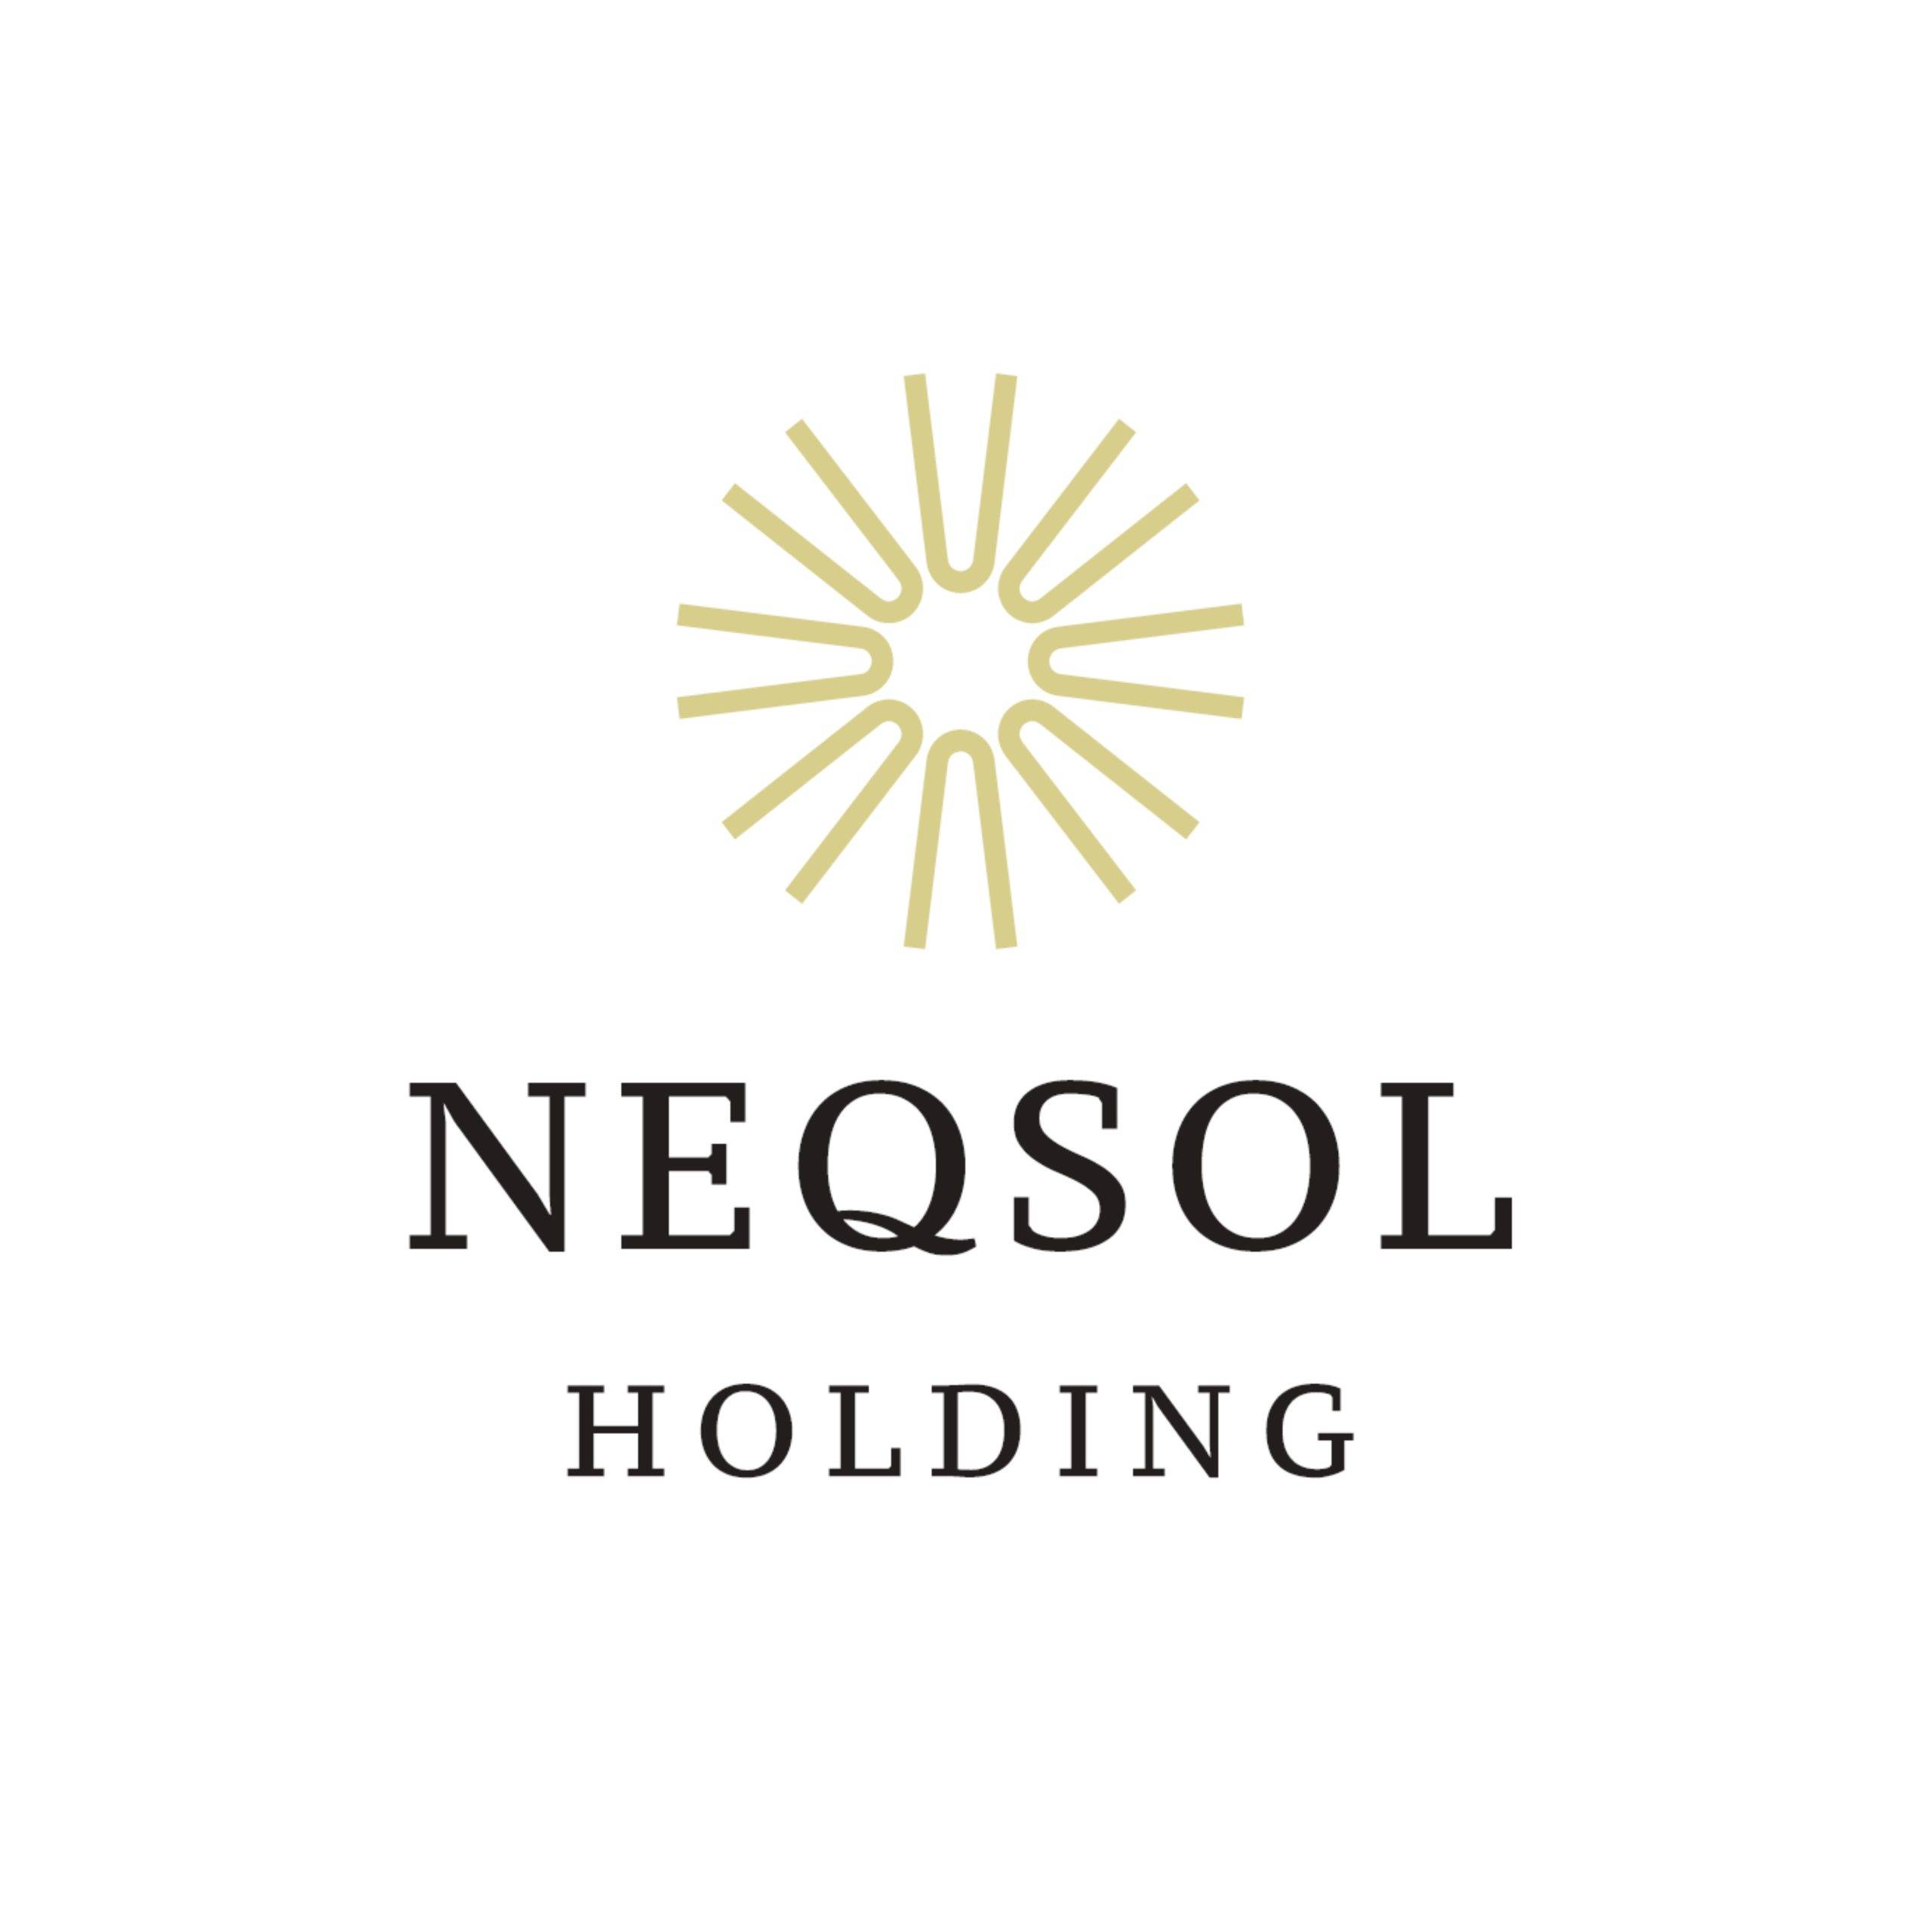 NEQSOL Holding logotype scaled